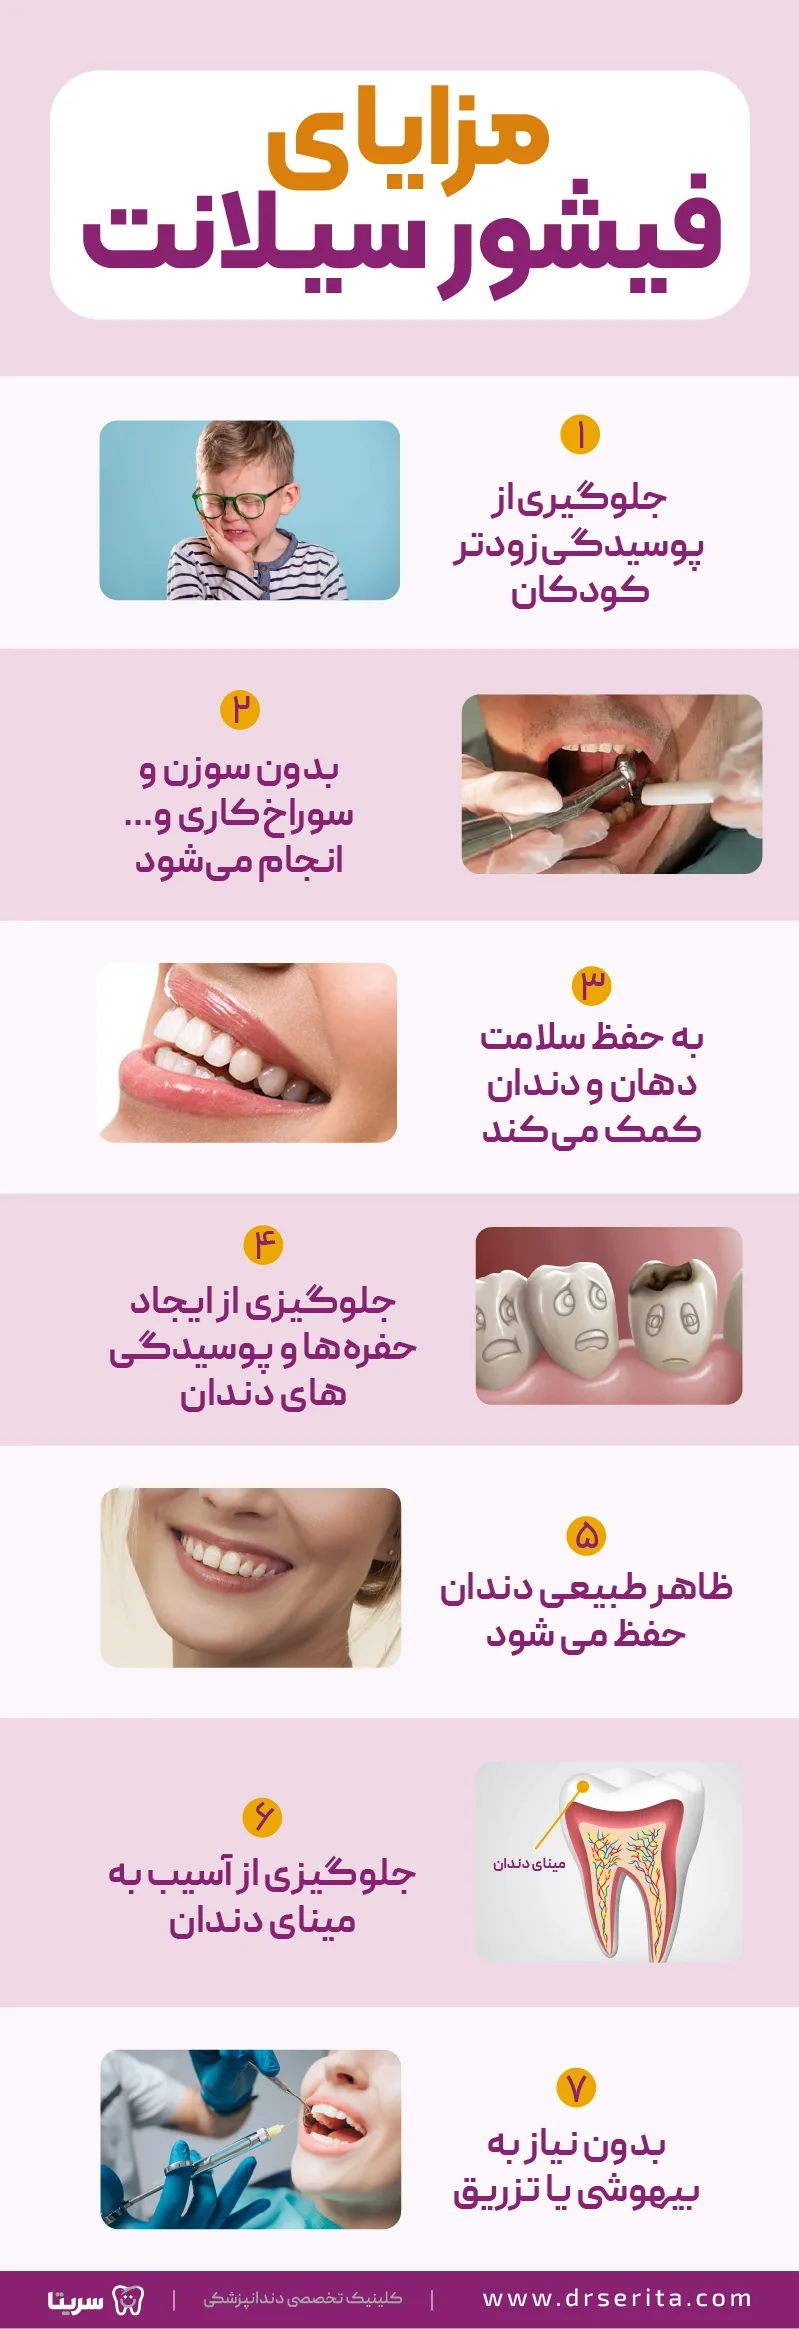 هفت مزیت فیشور سیلانت برای دندان به صورت اینفوگرافیک